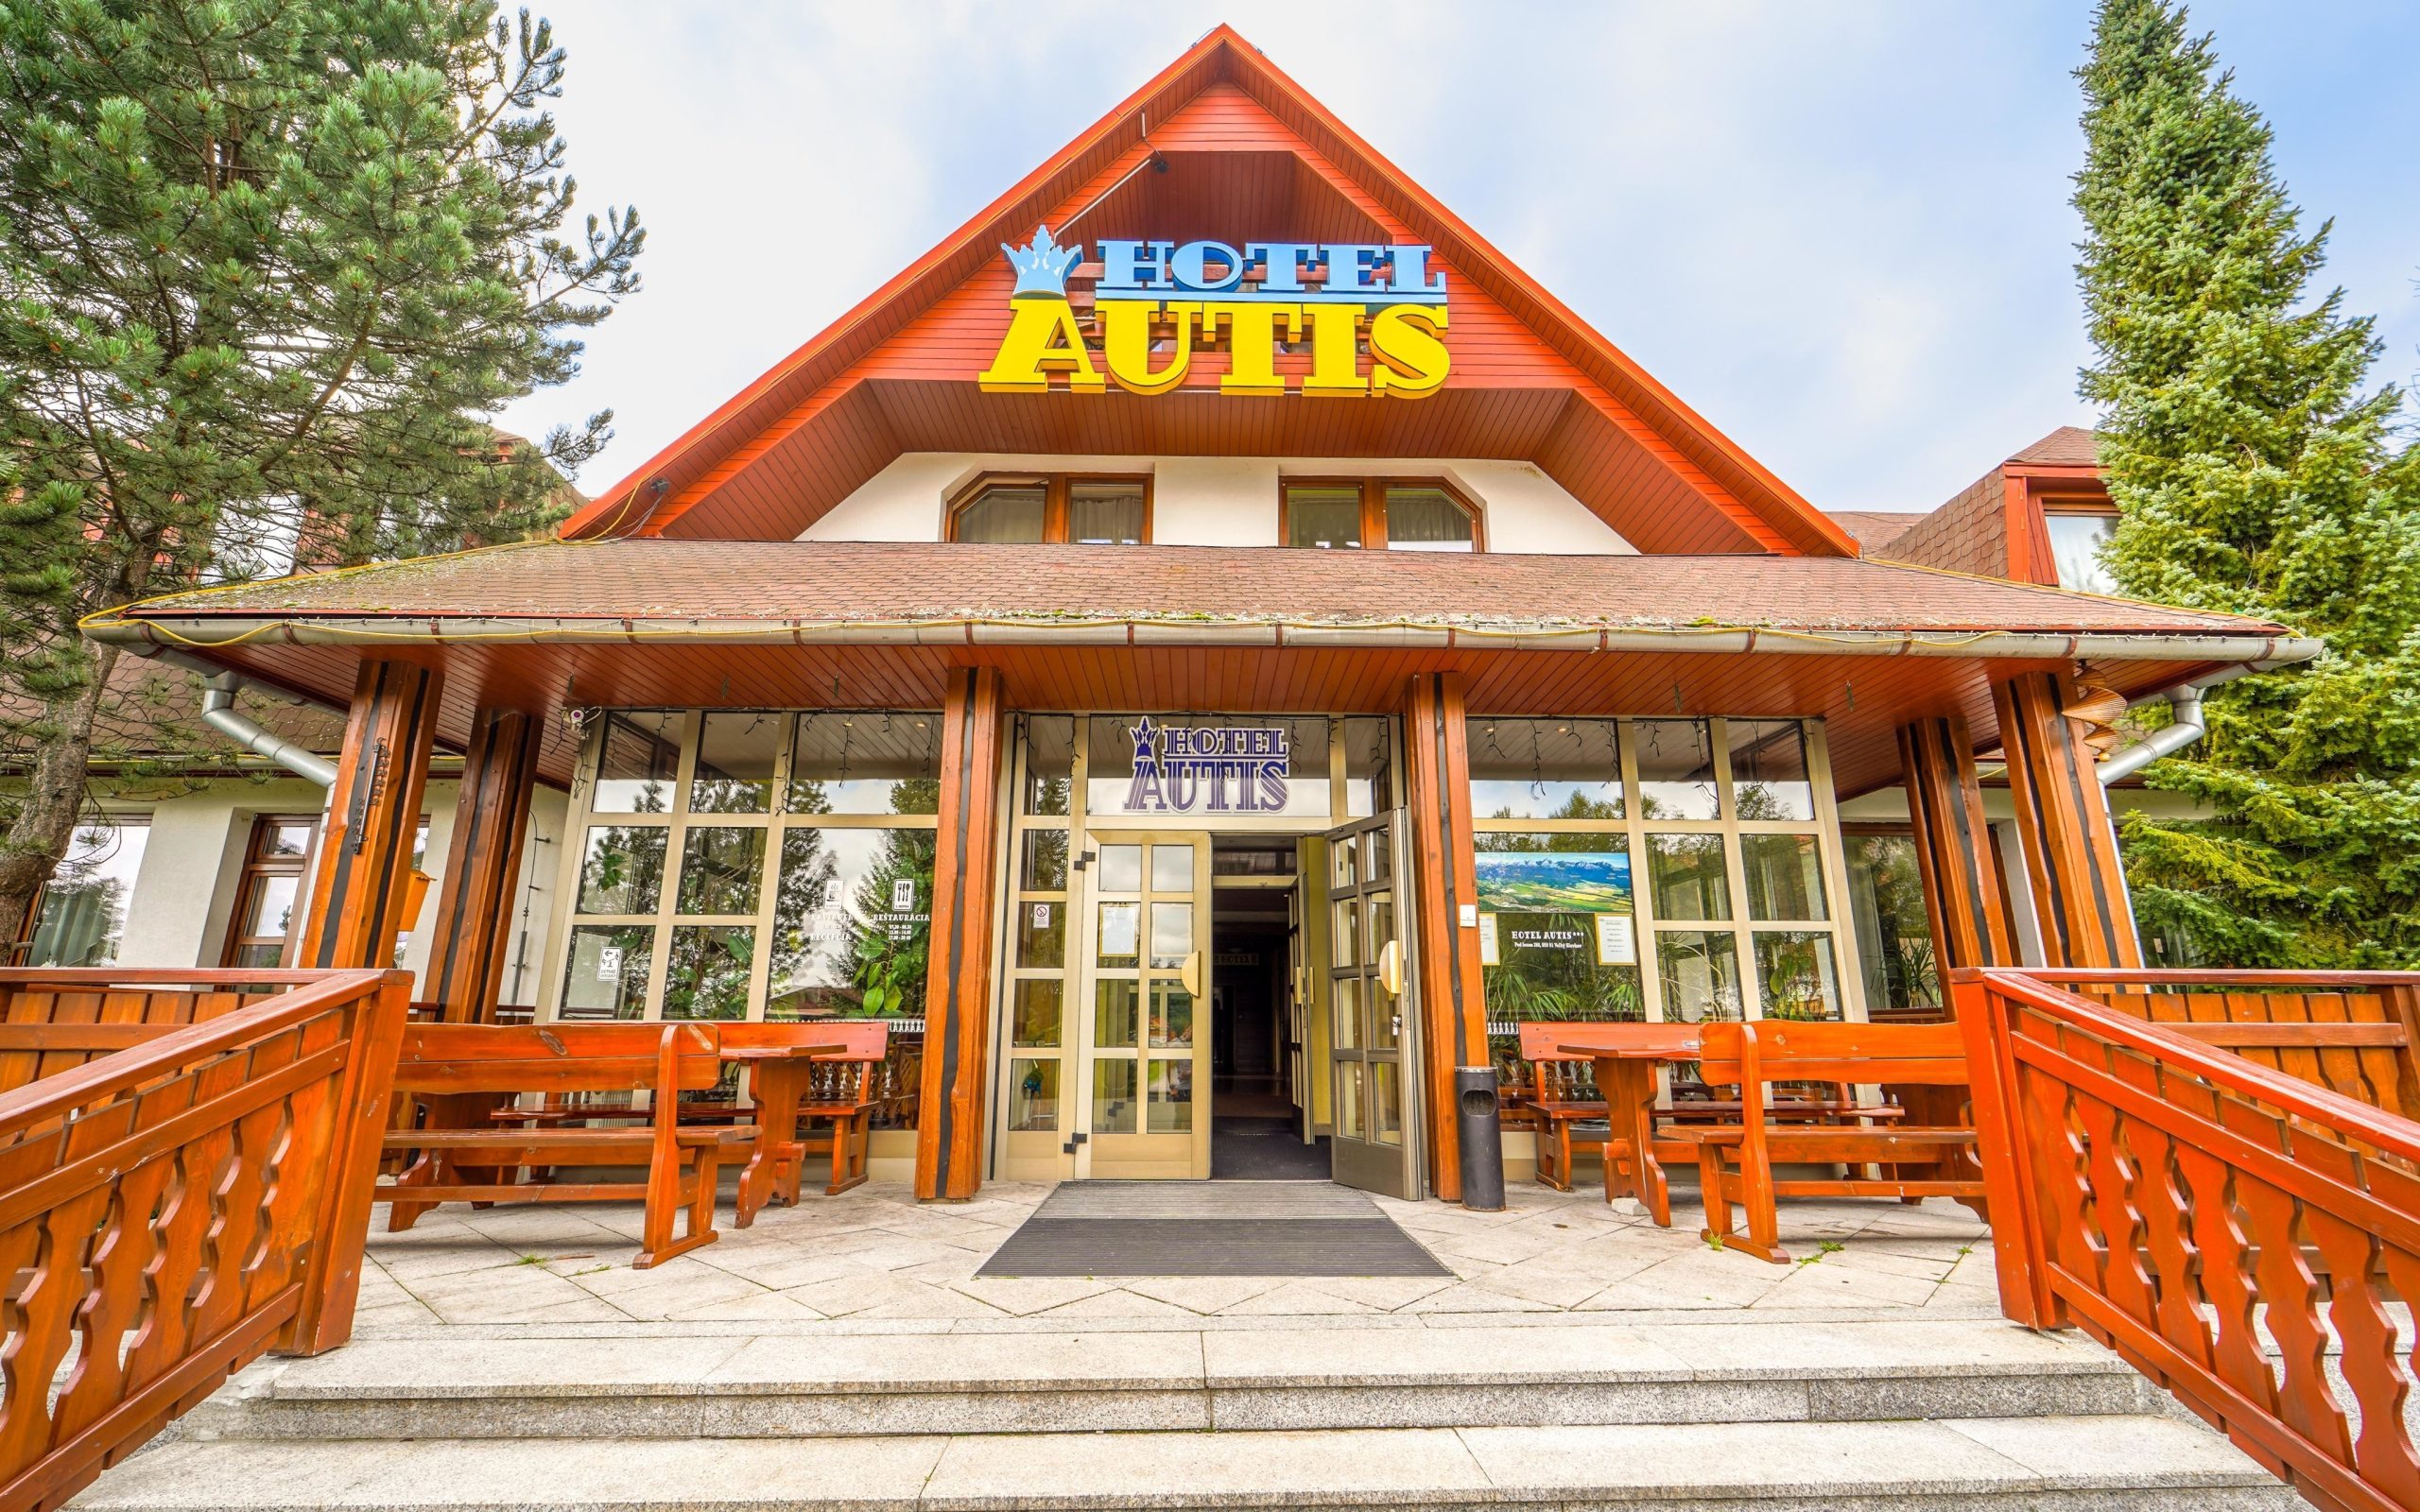 Ubytovanie/Pobyt: Hotel Autis ***, Pod lesom 298, Dolný Smokovec 059 81, recepcia@autishotel.sk